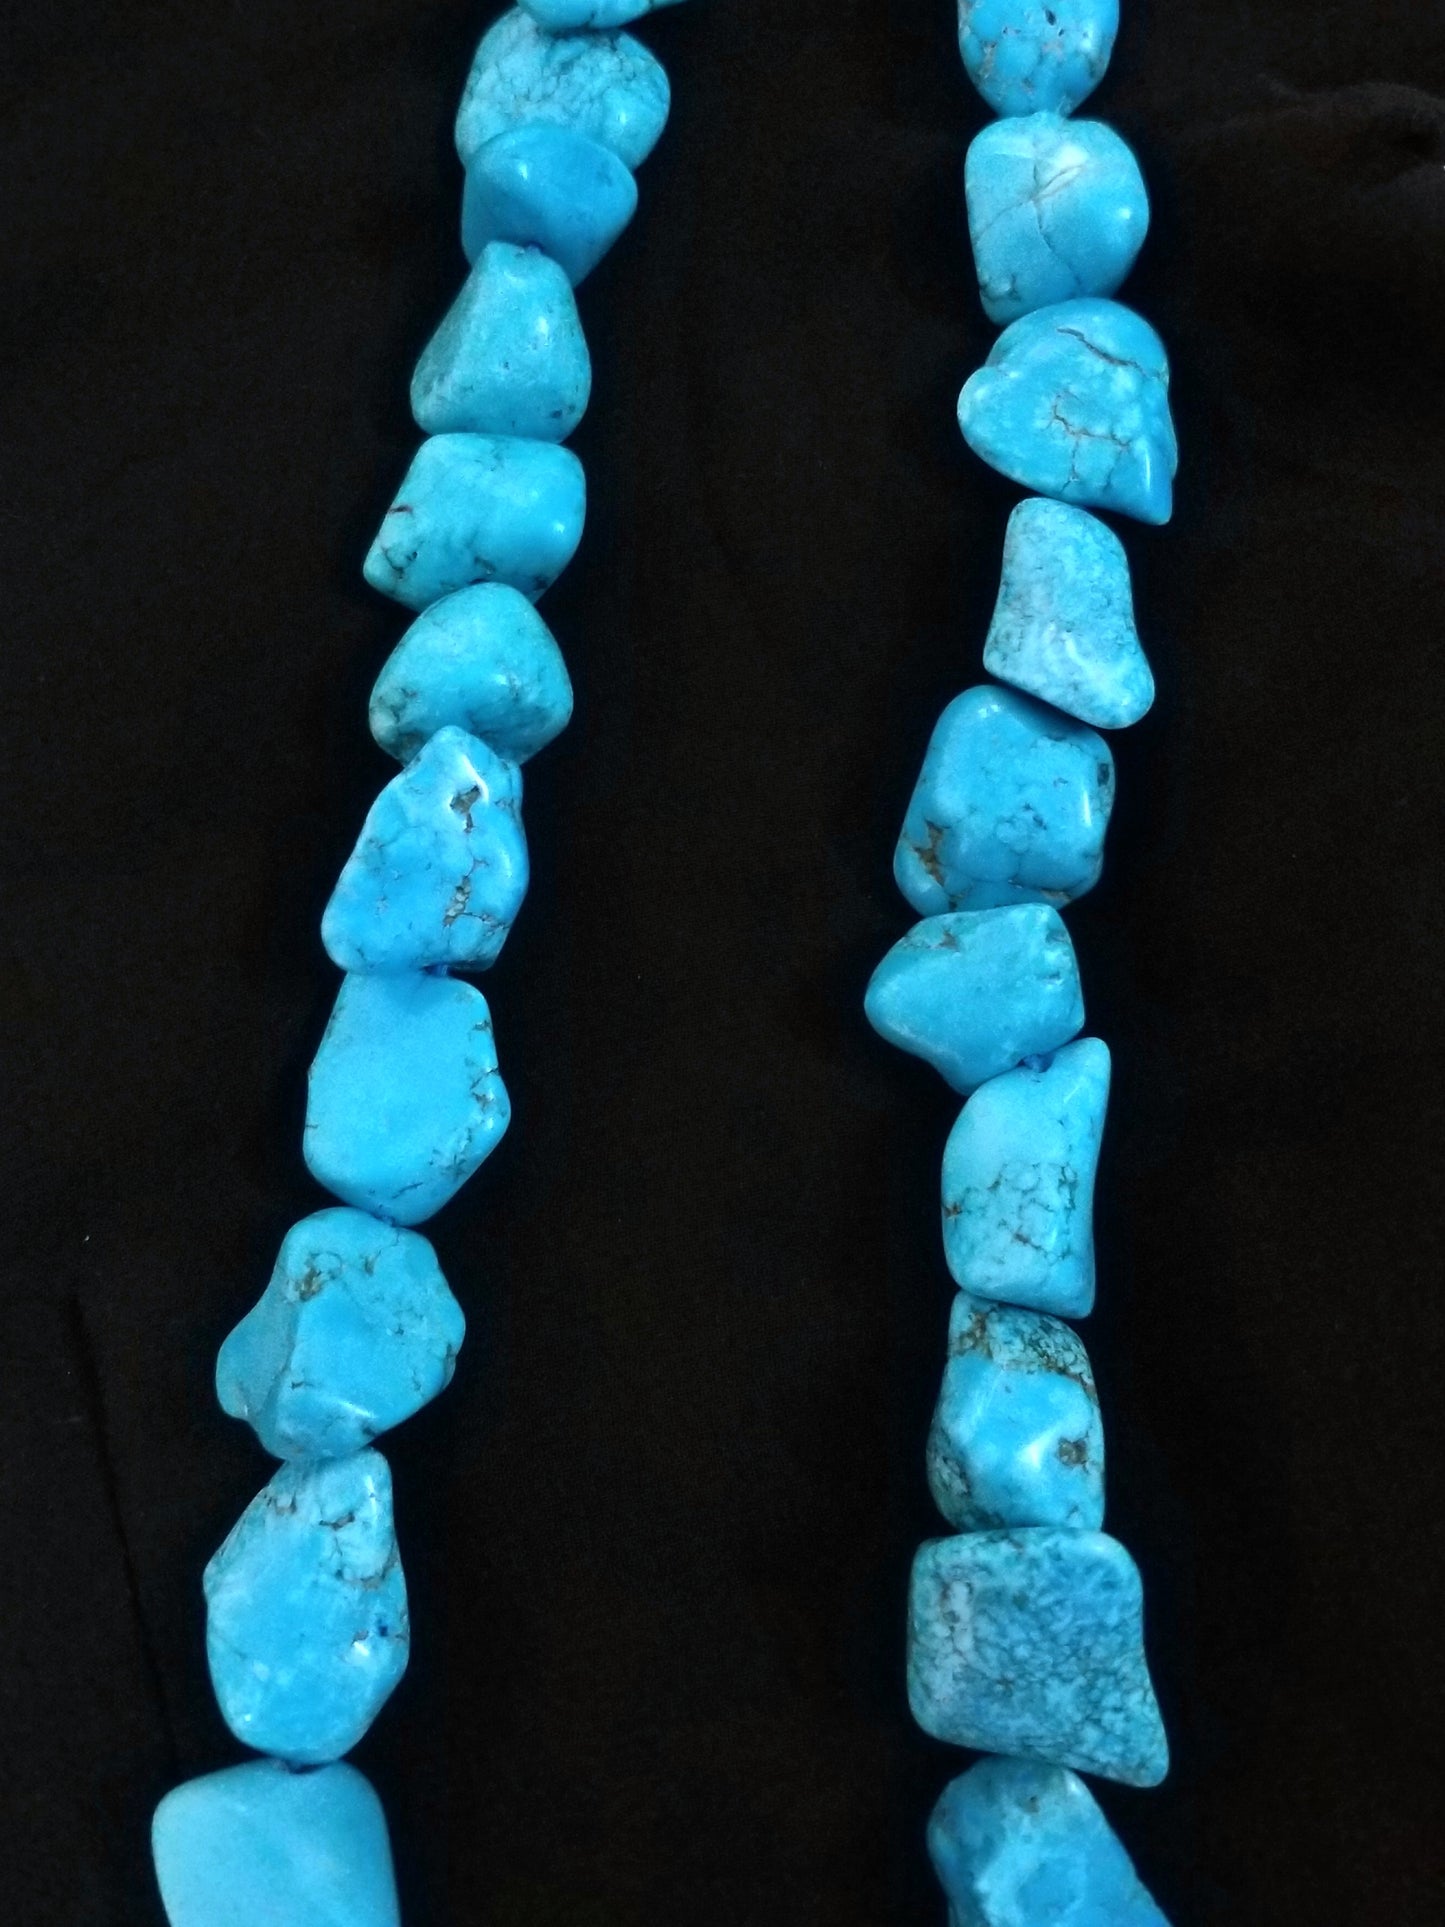 Turquoise Tumble Beads Necklace, Large Turquoise Gemstones Necklace